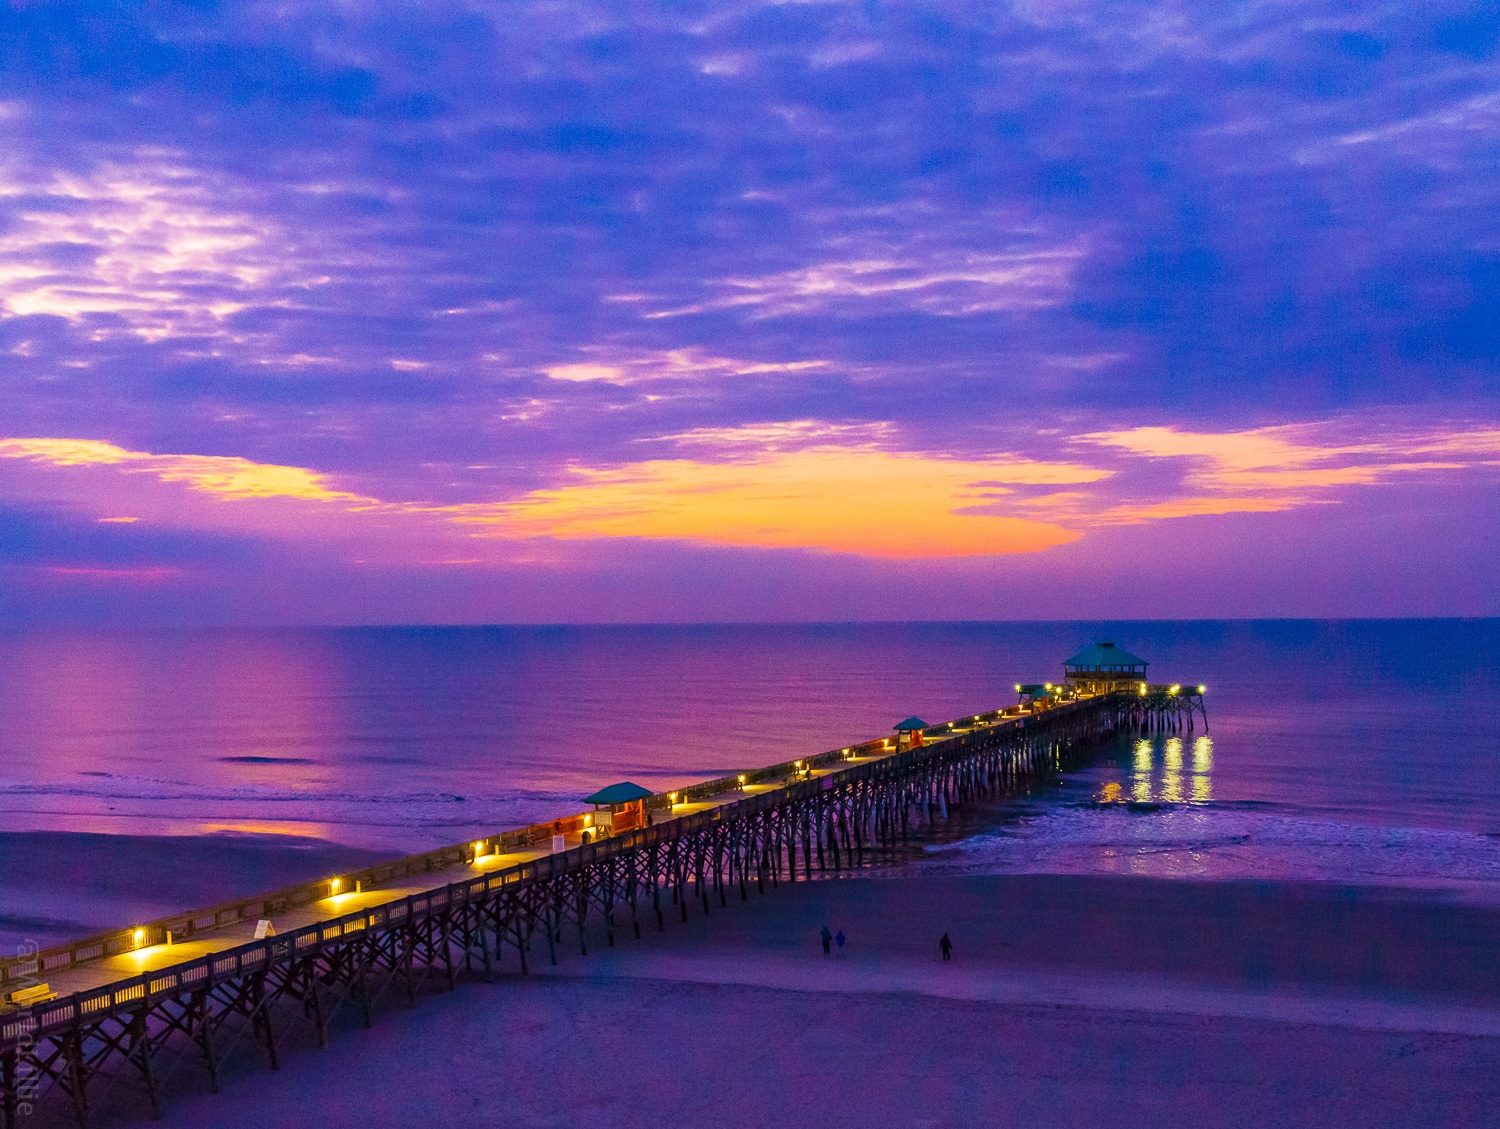 Sunrise on the famous Folly Beach pier.